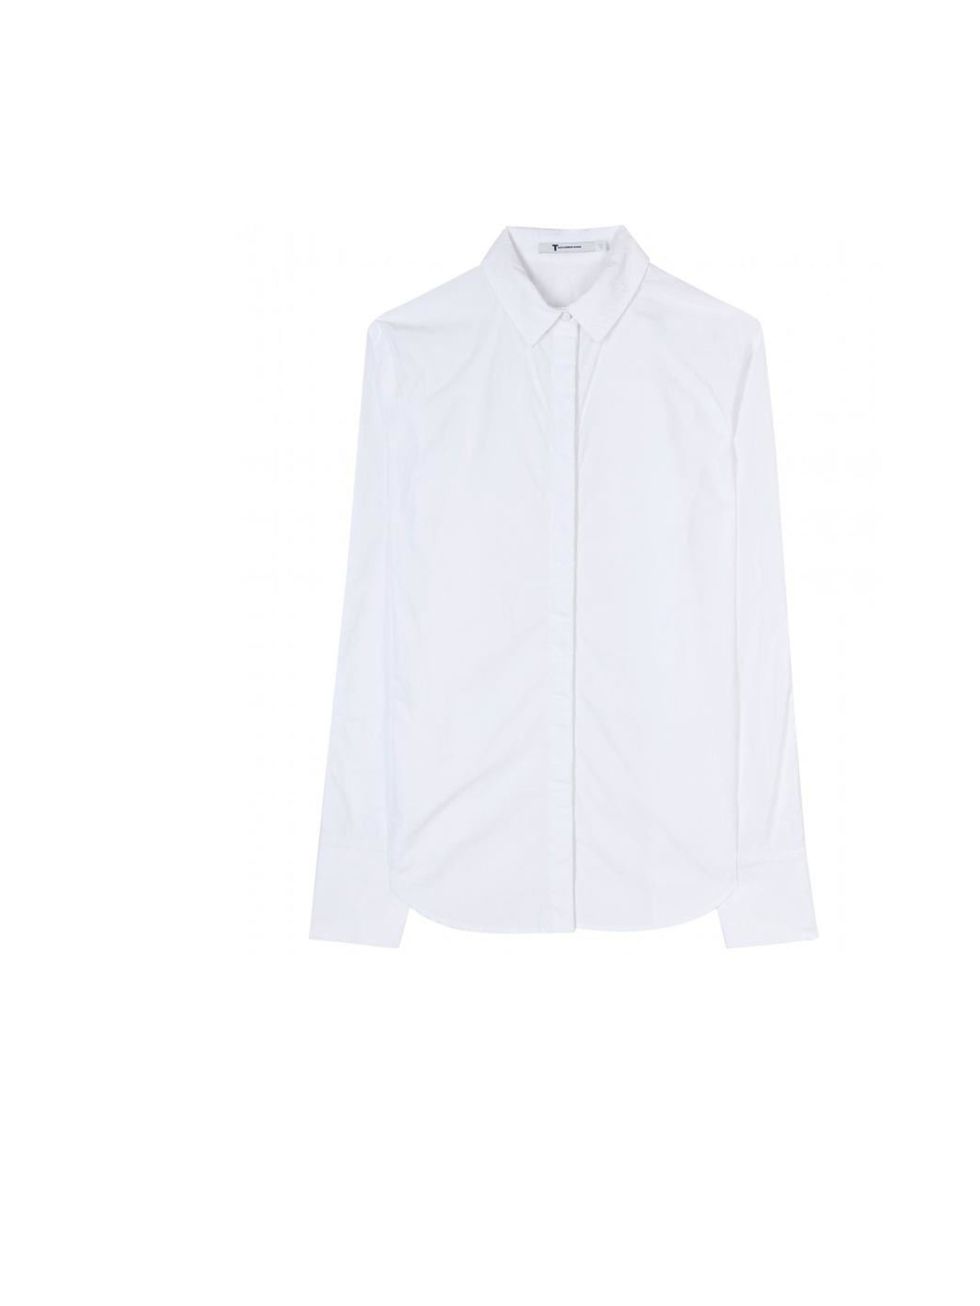 <p>T by Alexander Wang button-down shirt, £146, at <a href="http://www.mytheresa.com/uk_en/cotton-poplin-and-pique-button-down-shirt.html">mytheresa.com</a></p>